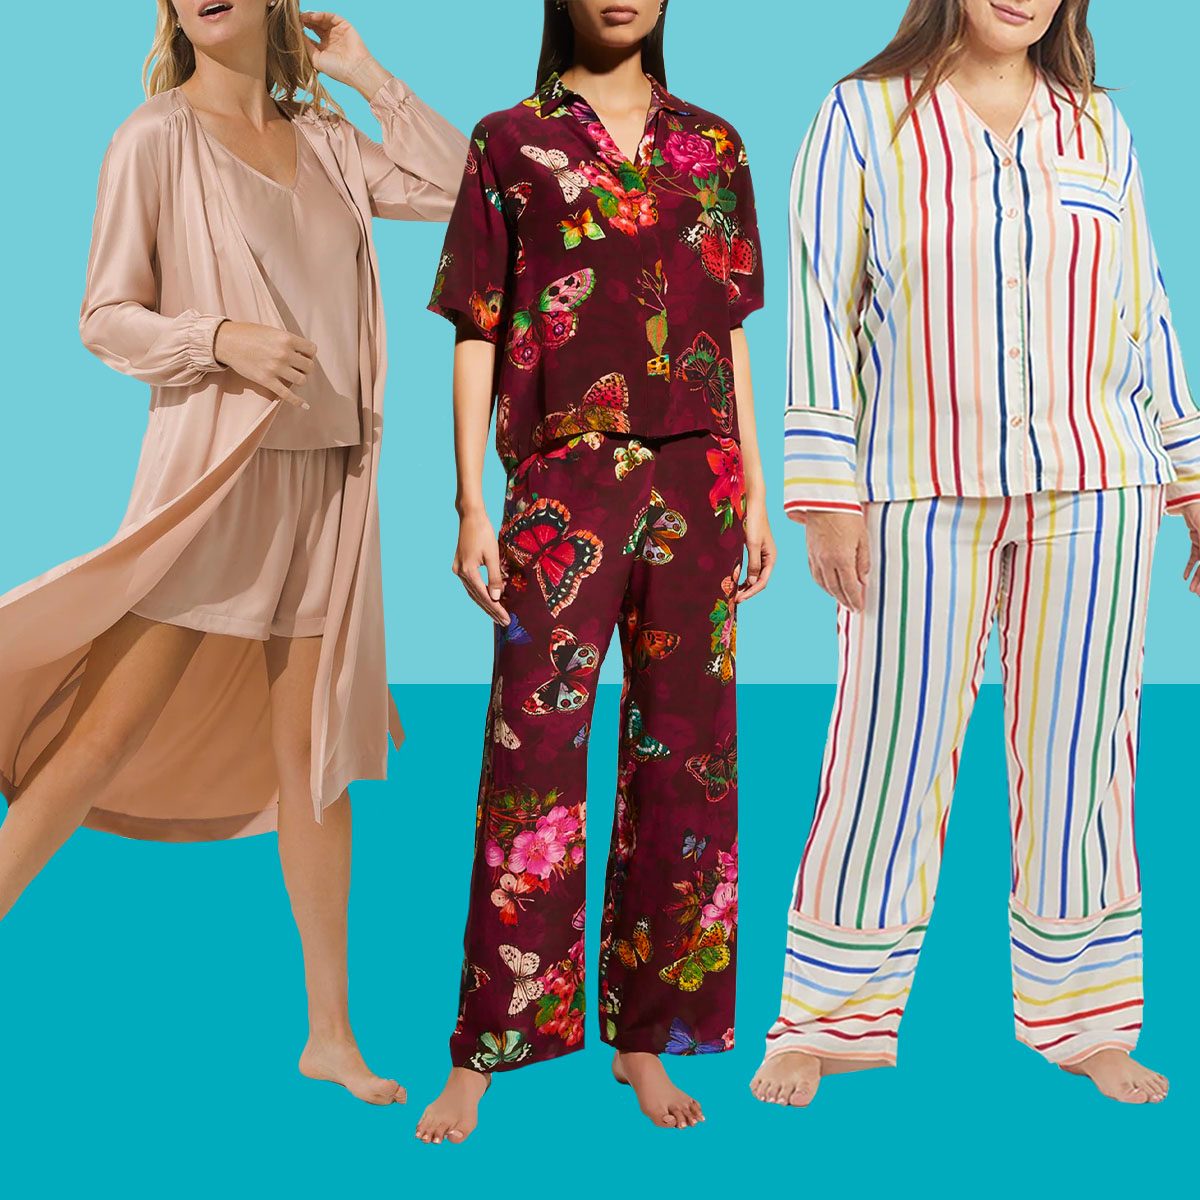 Pajamas For Girls,Women's Pajamas,Silk Pajamas,Women Pajamas,Cute Pajamas Pajamas For Women Girls Pajamas Women Pajamas Holiday Pajamas